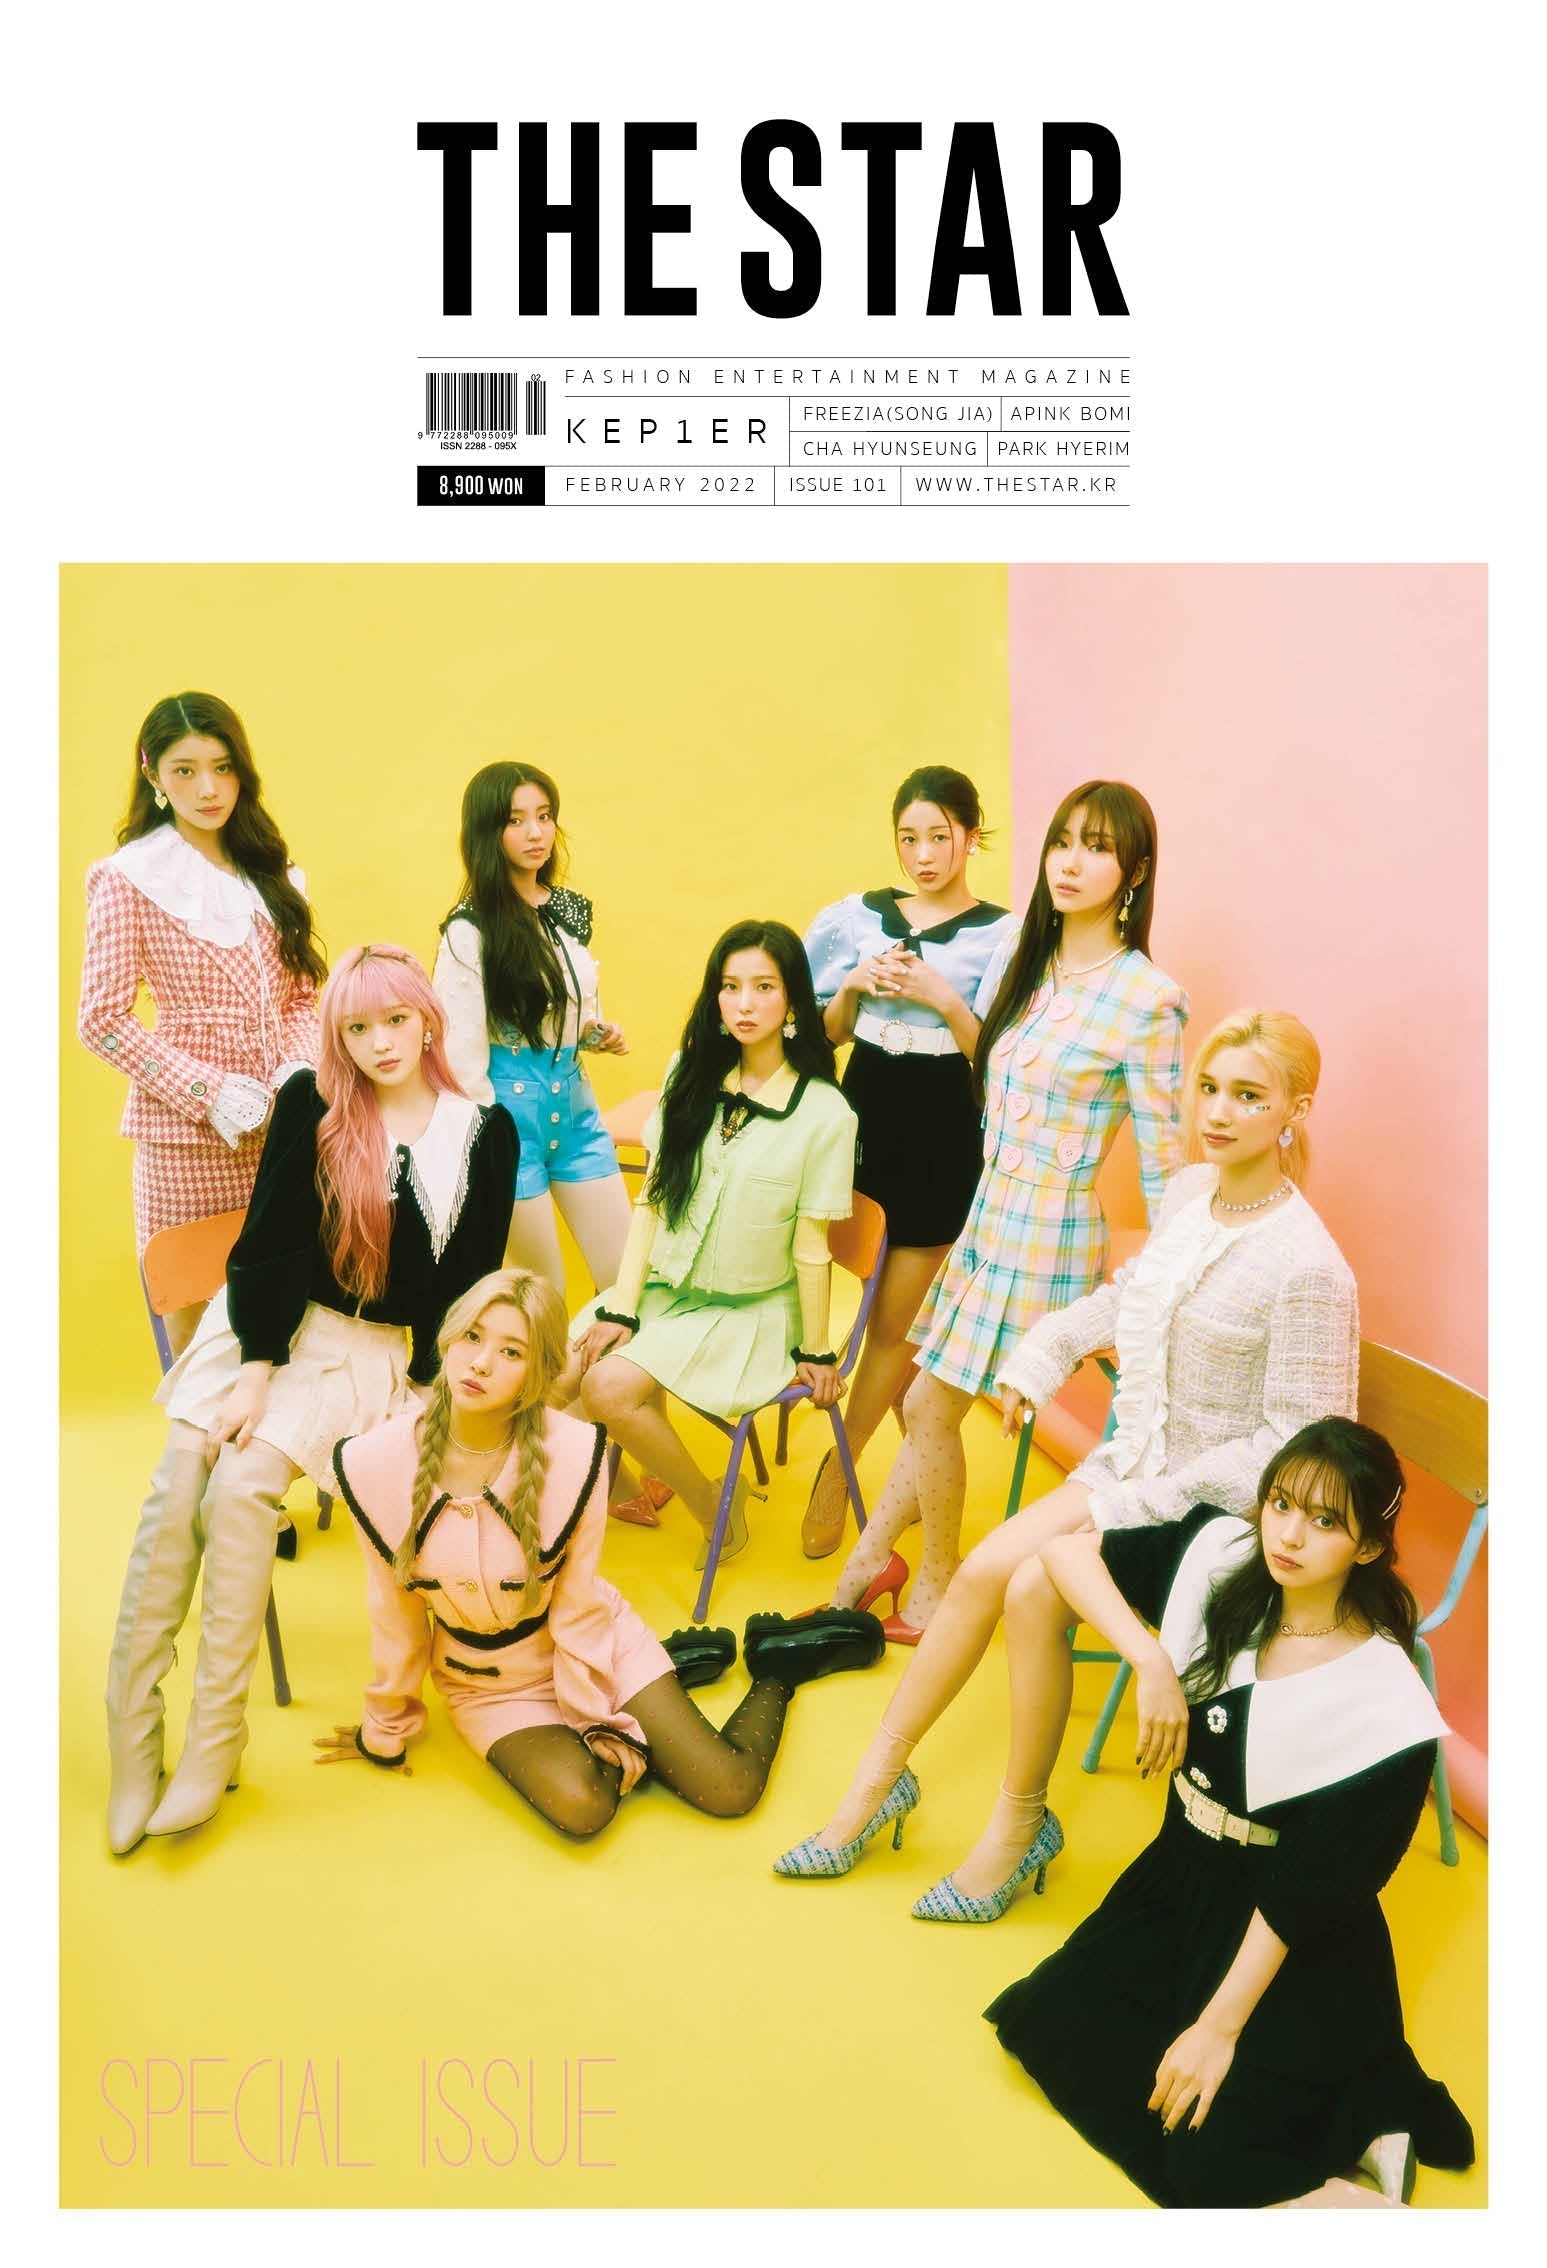 THE STAR MAGAZINE (Cover: KEP1ER) - February 2022 Issue - Kpop Omo